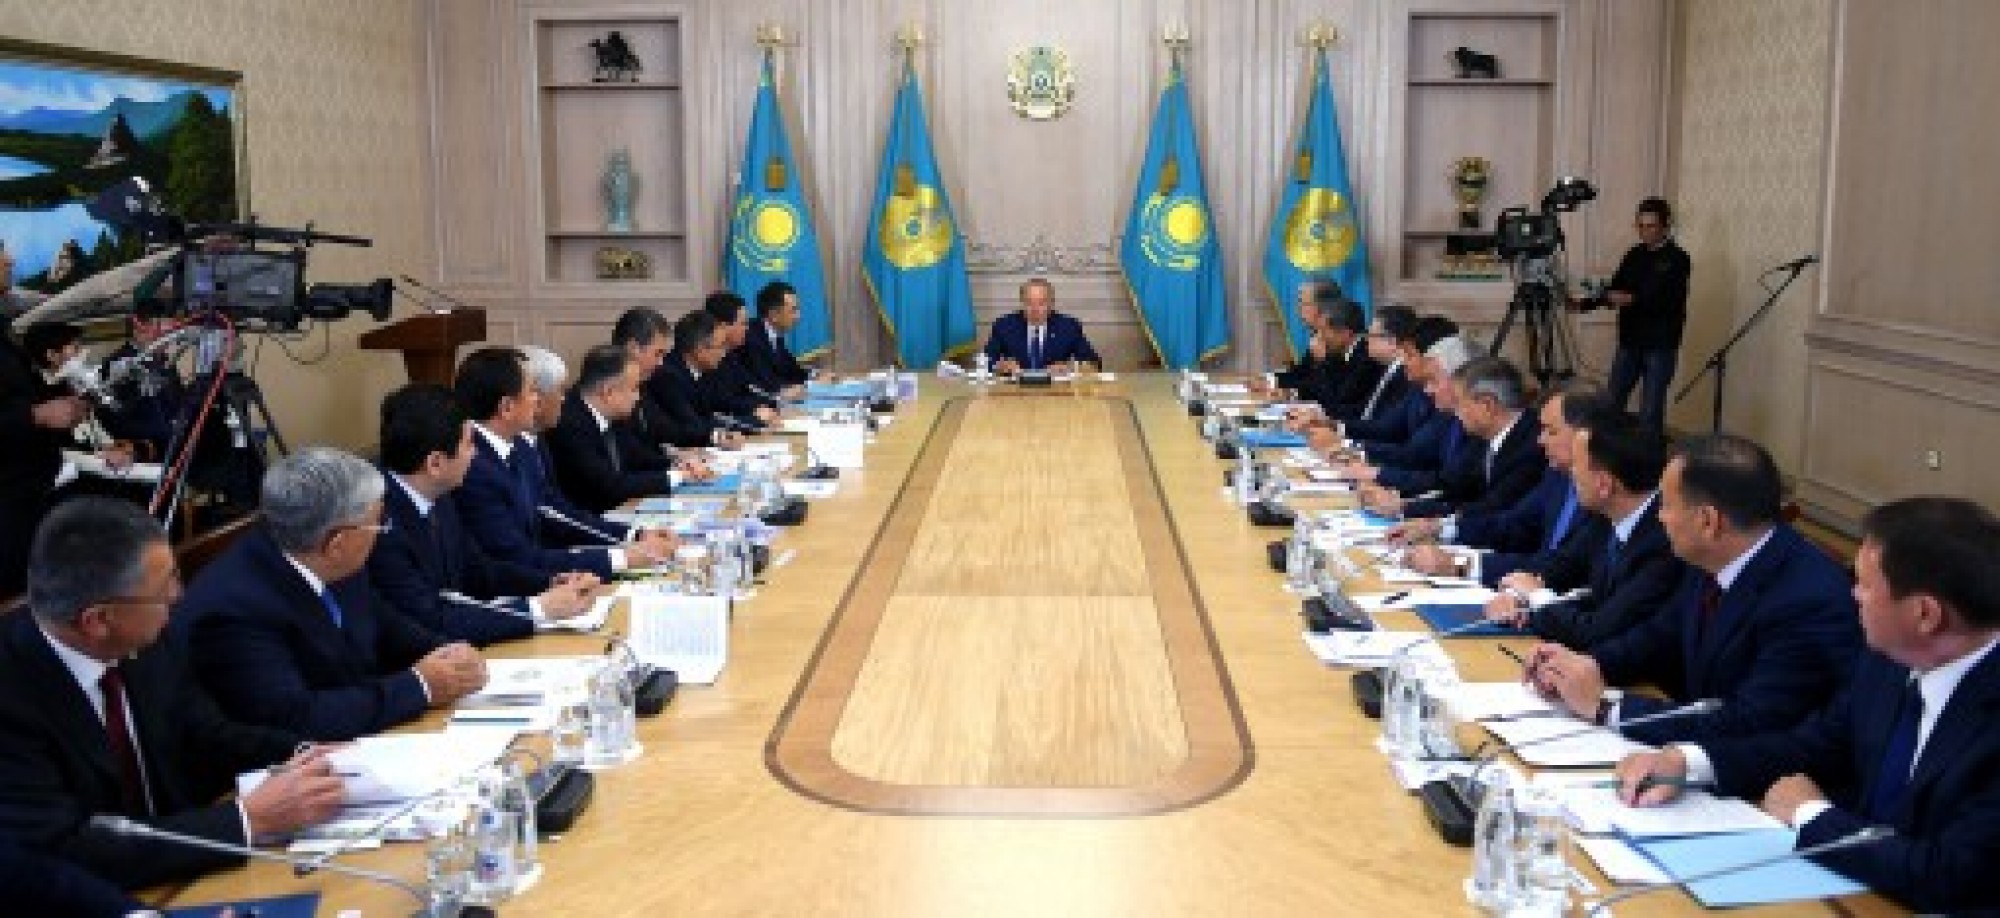 Нурсултан Назарбаев на совещании высказал критические замечания по вопросам  развития регионов